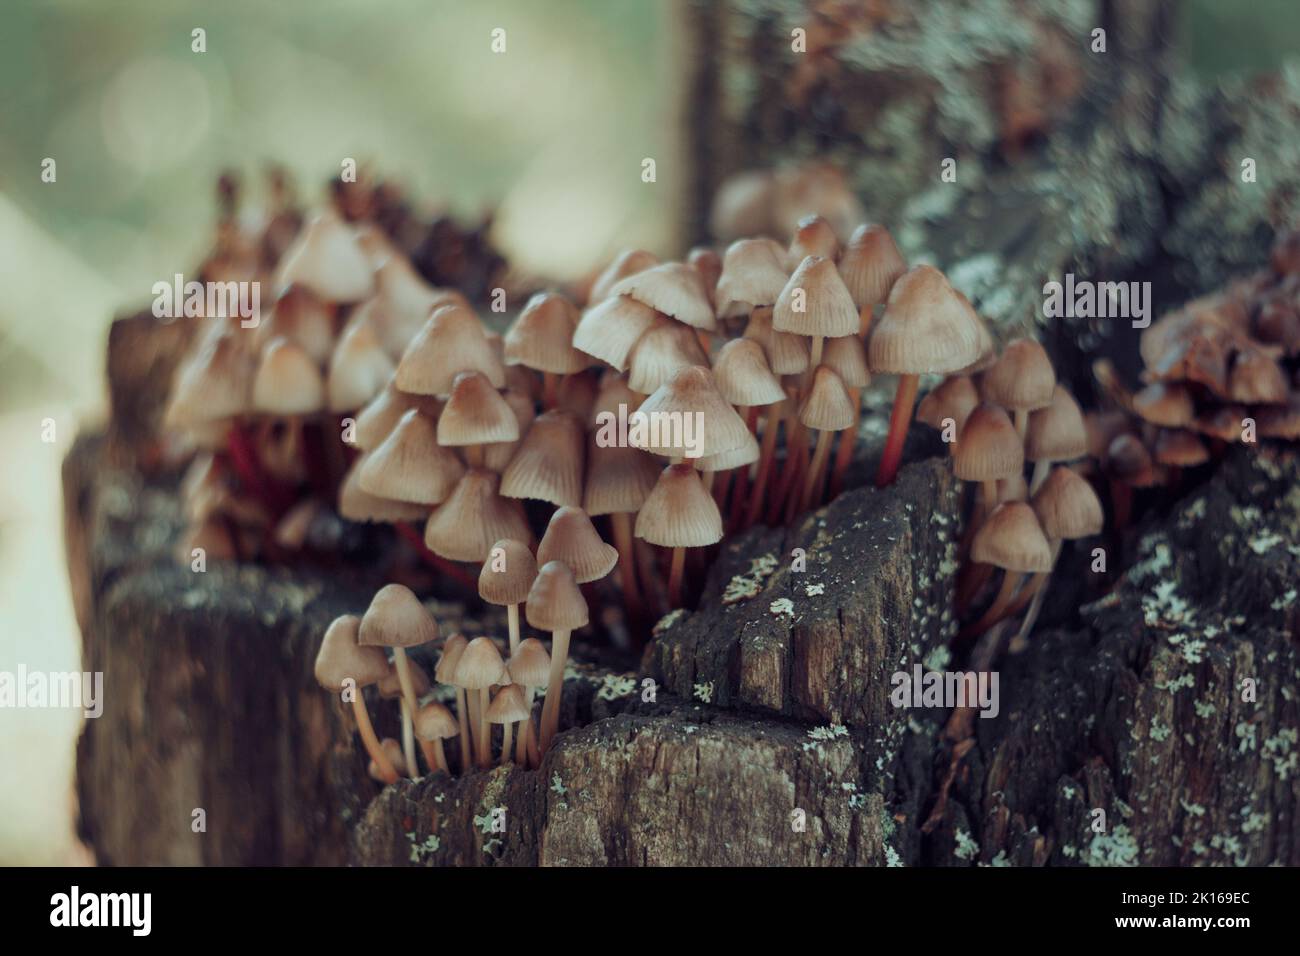 Mycena inclinata mushroom on old stump. Group of brown small mushrooms on a tree. Inedible mushroom mycena. Selective focus. Stock Photo